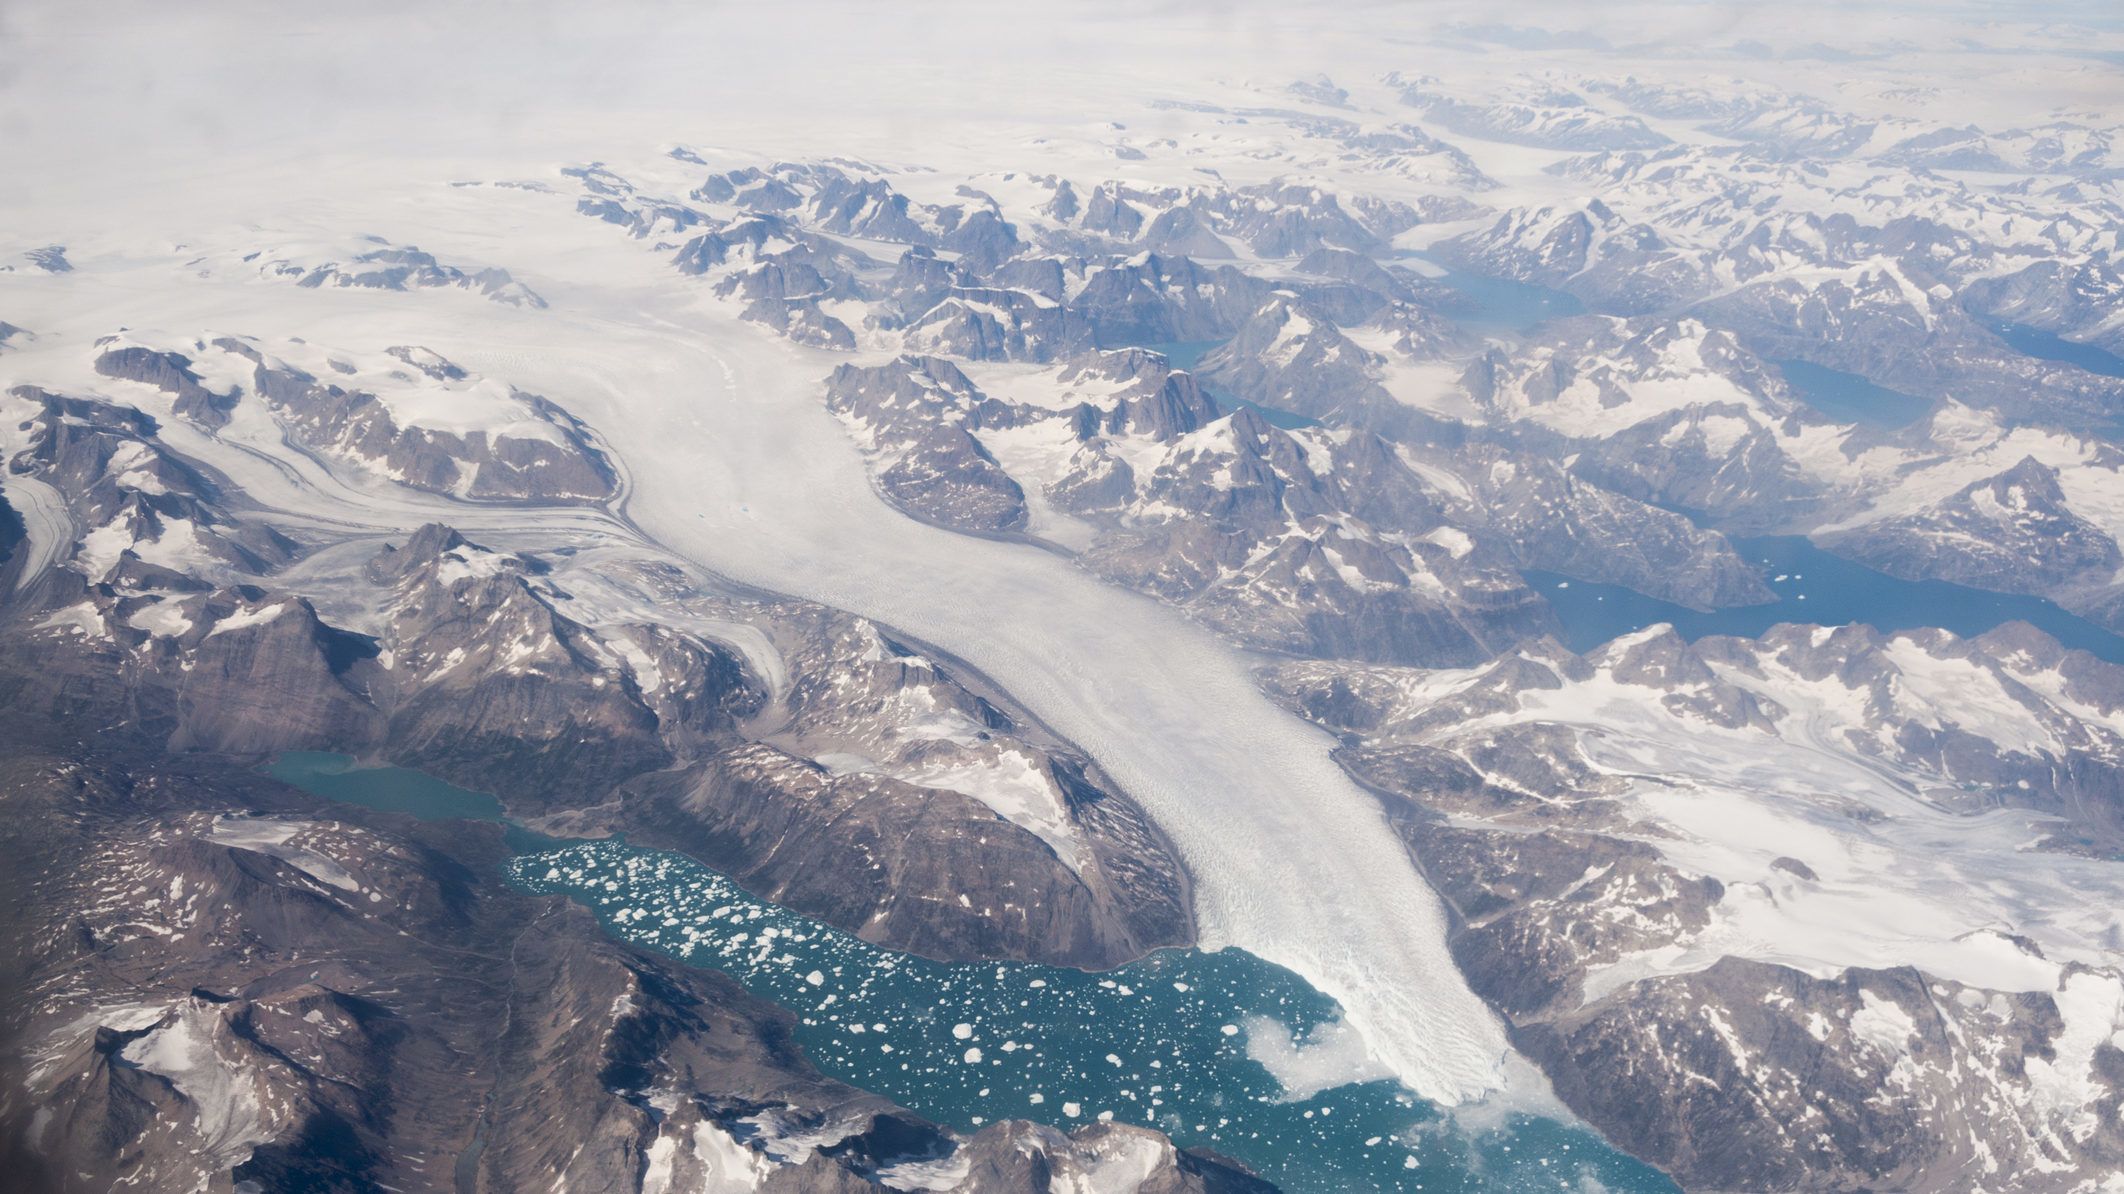 Nincs visszaút a grönlandi gleccserek számára